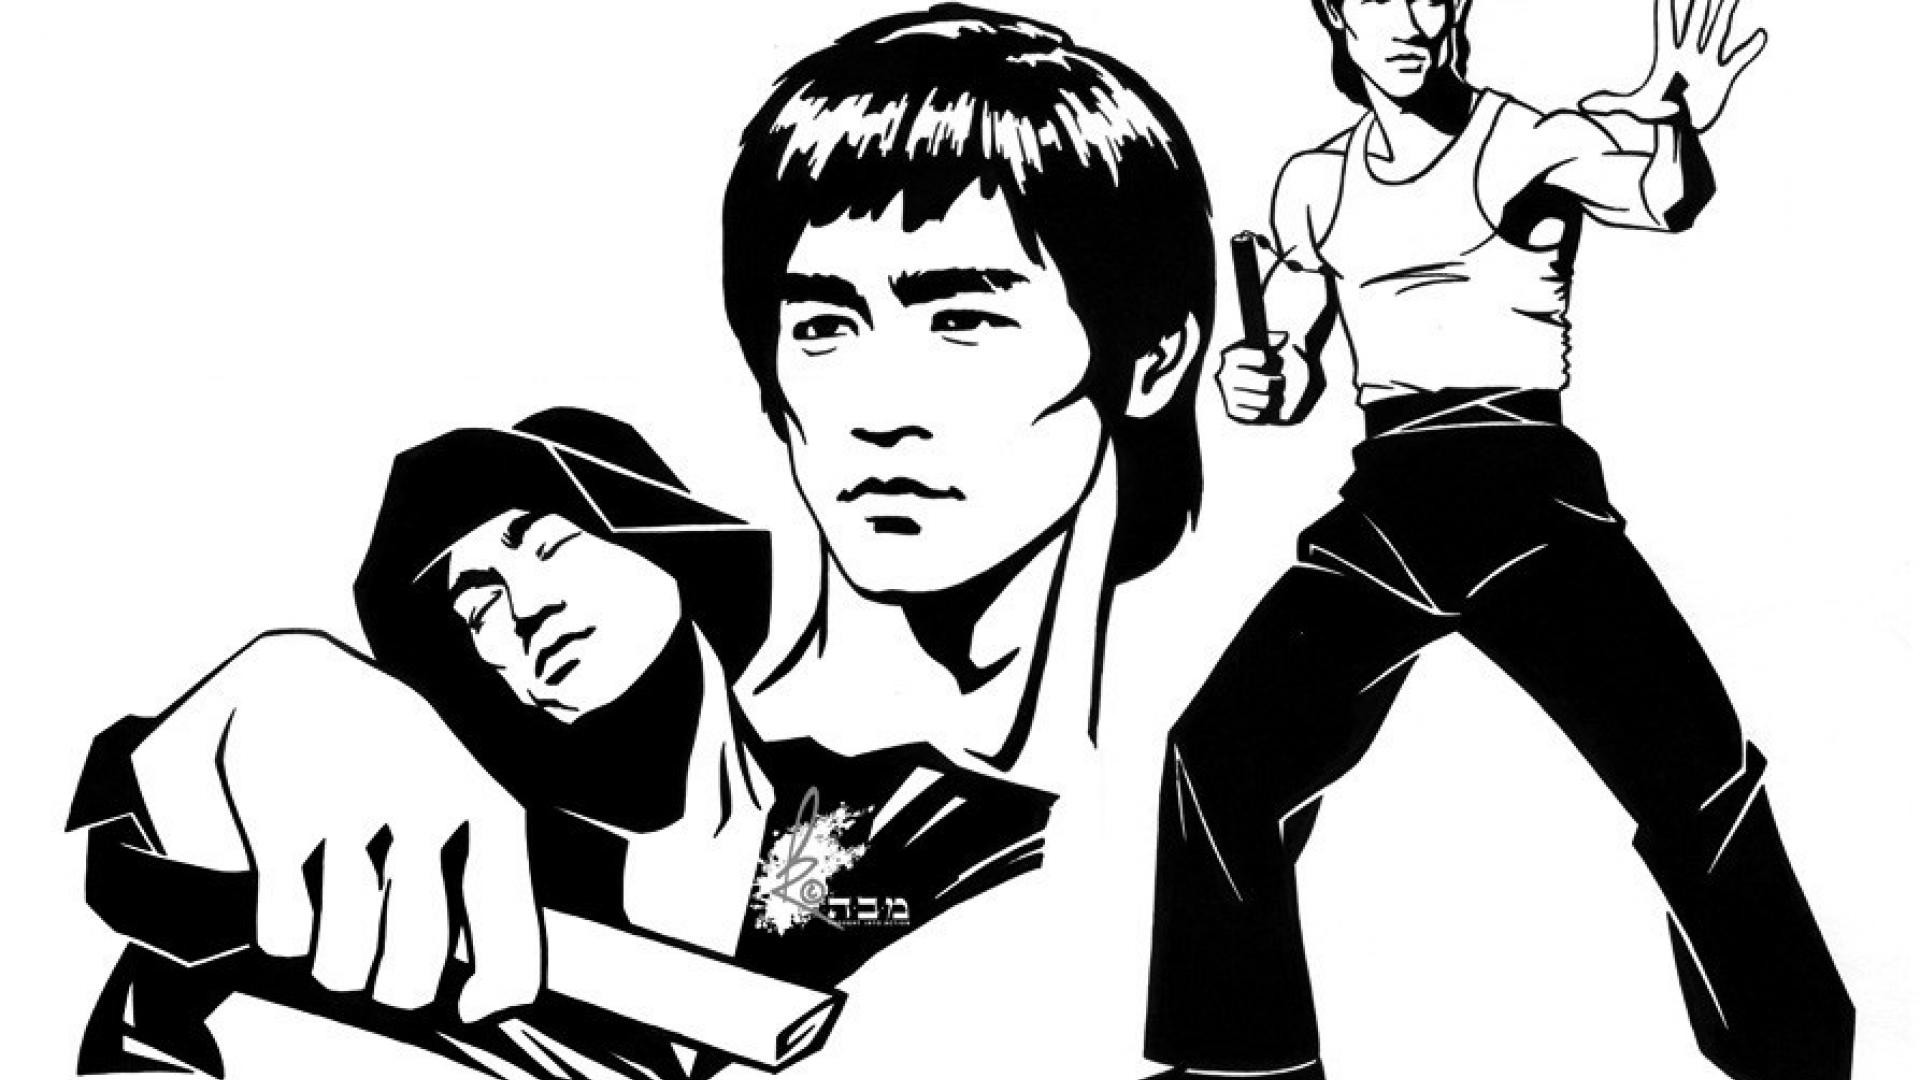 Bruce Lee Png Image Background 1080 X 1920 Wallpaper Motivation PNG ...